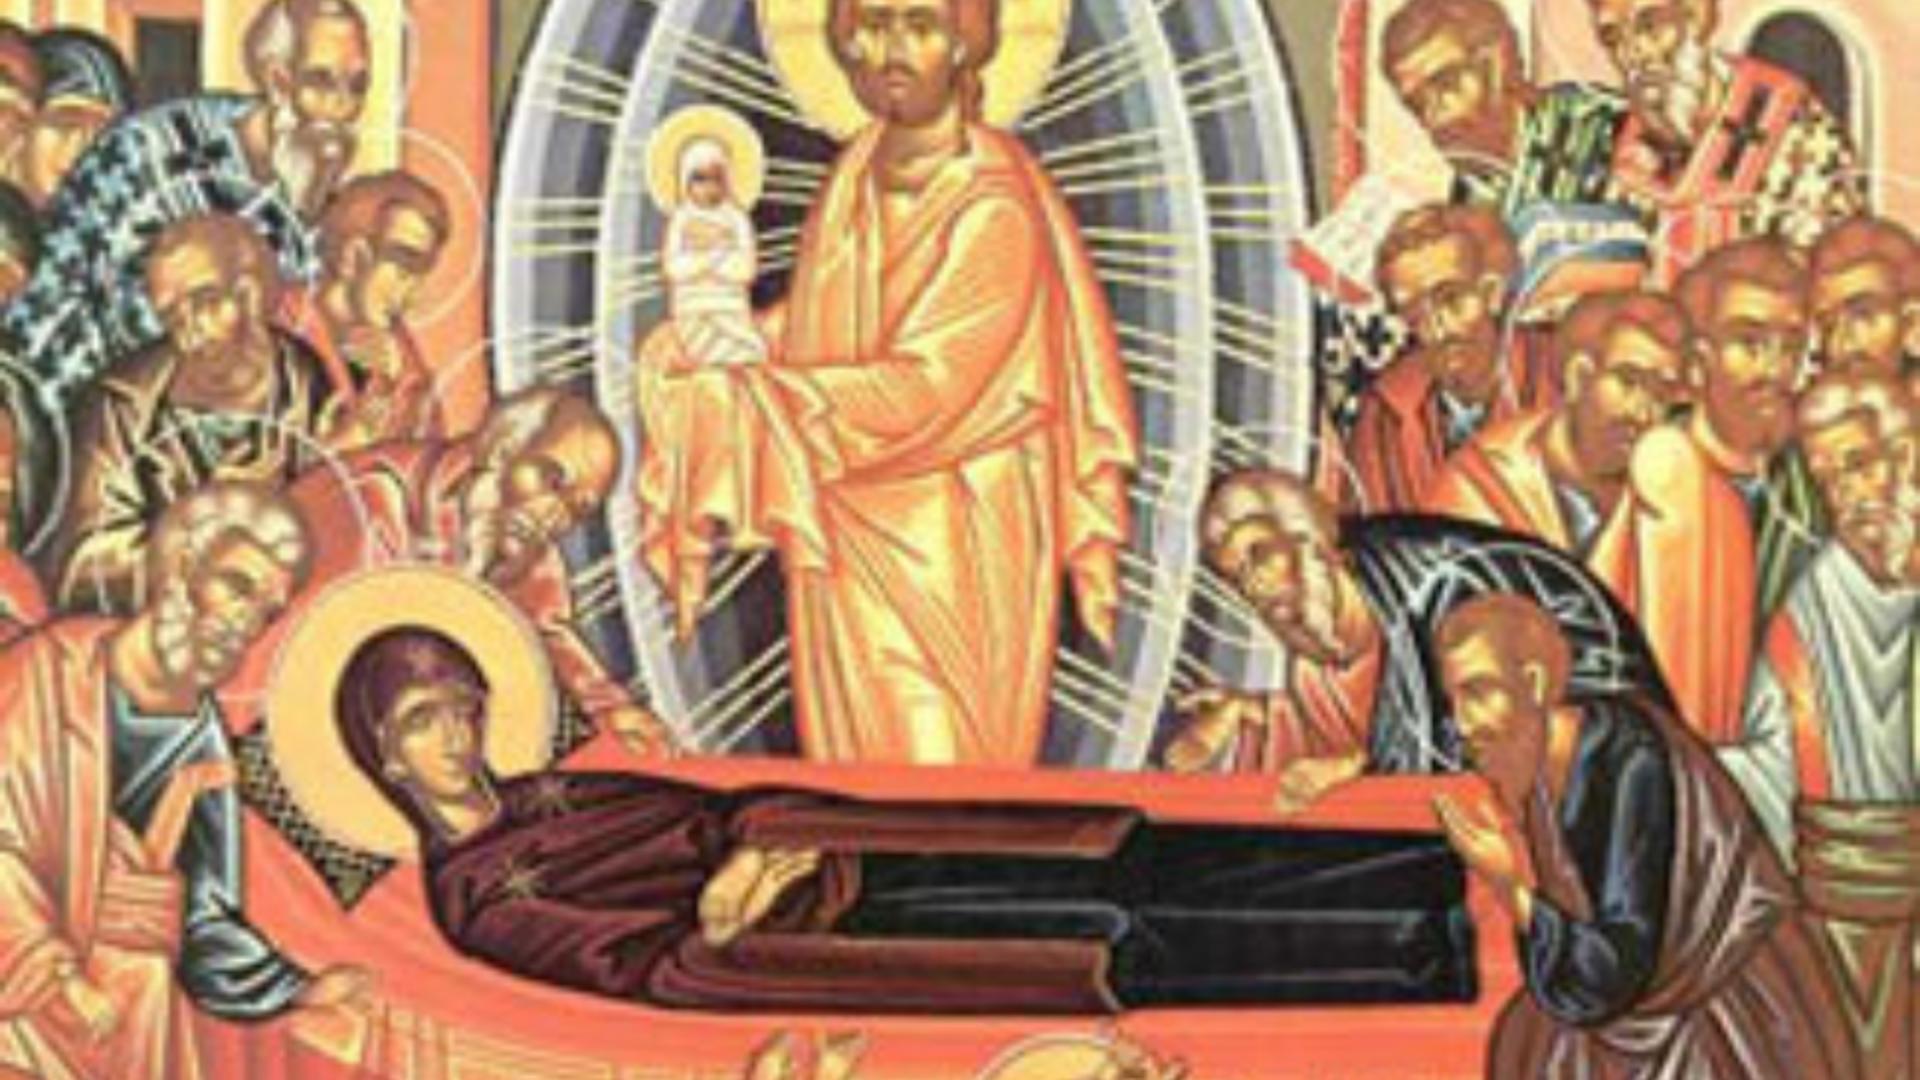 SĂRBĂTOARE 15 august – Adormirea Maicii Domnului sau Sfântă Mărie Mare, sărbătoare uriașă în calendarul ortodox